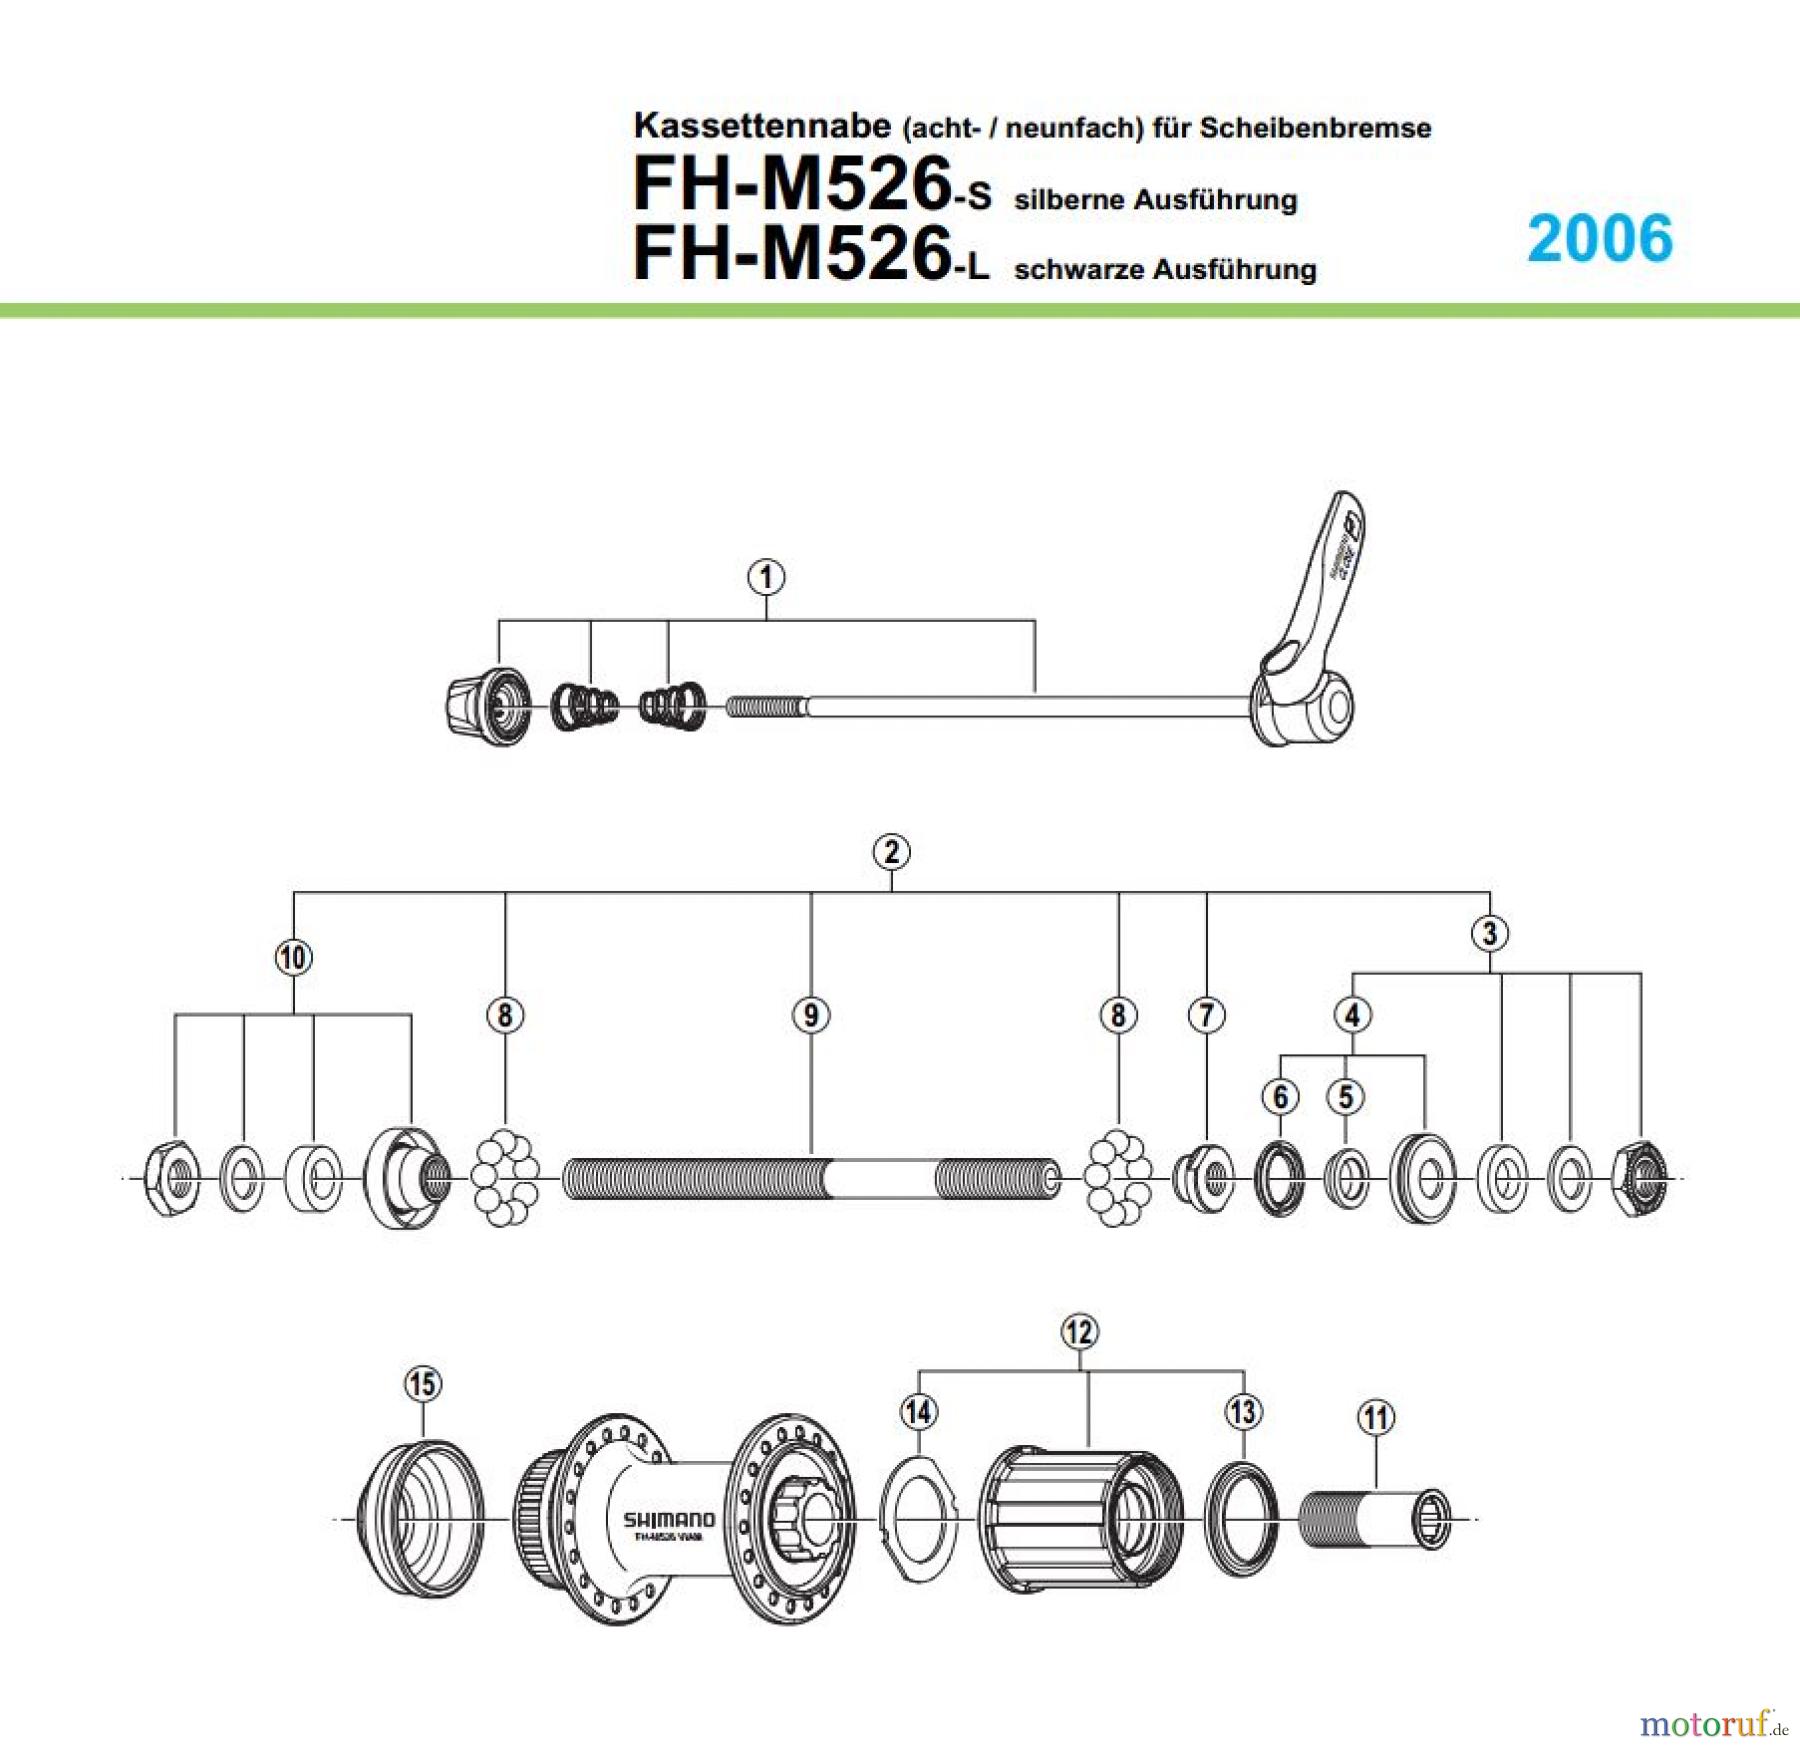  Shimano FH Free Hub - Freilaufnabe FH-M526 Kassettennabe (8- / 9-fach) für Scheibenbremse